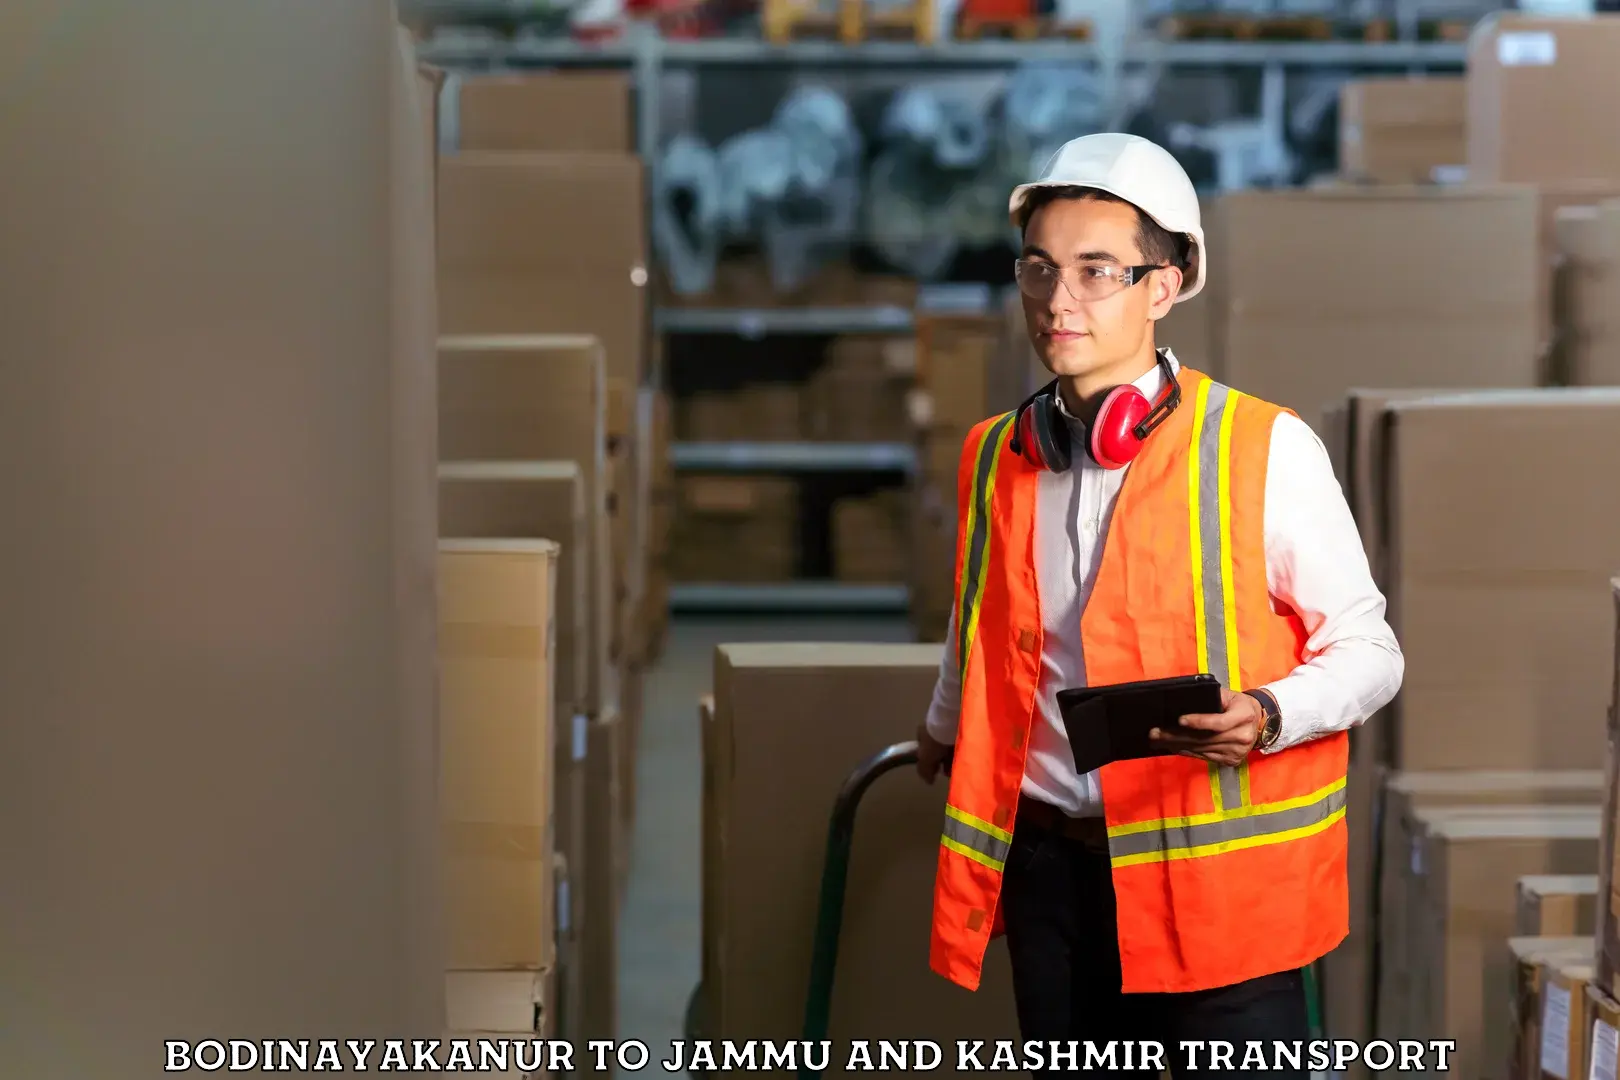 Material transport services Bodinayakanur to Jammu and Kashmir